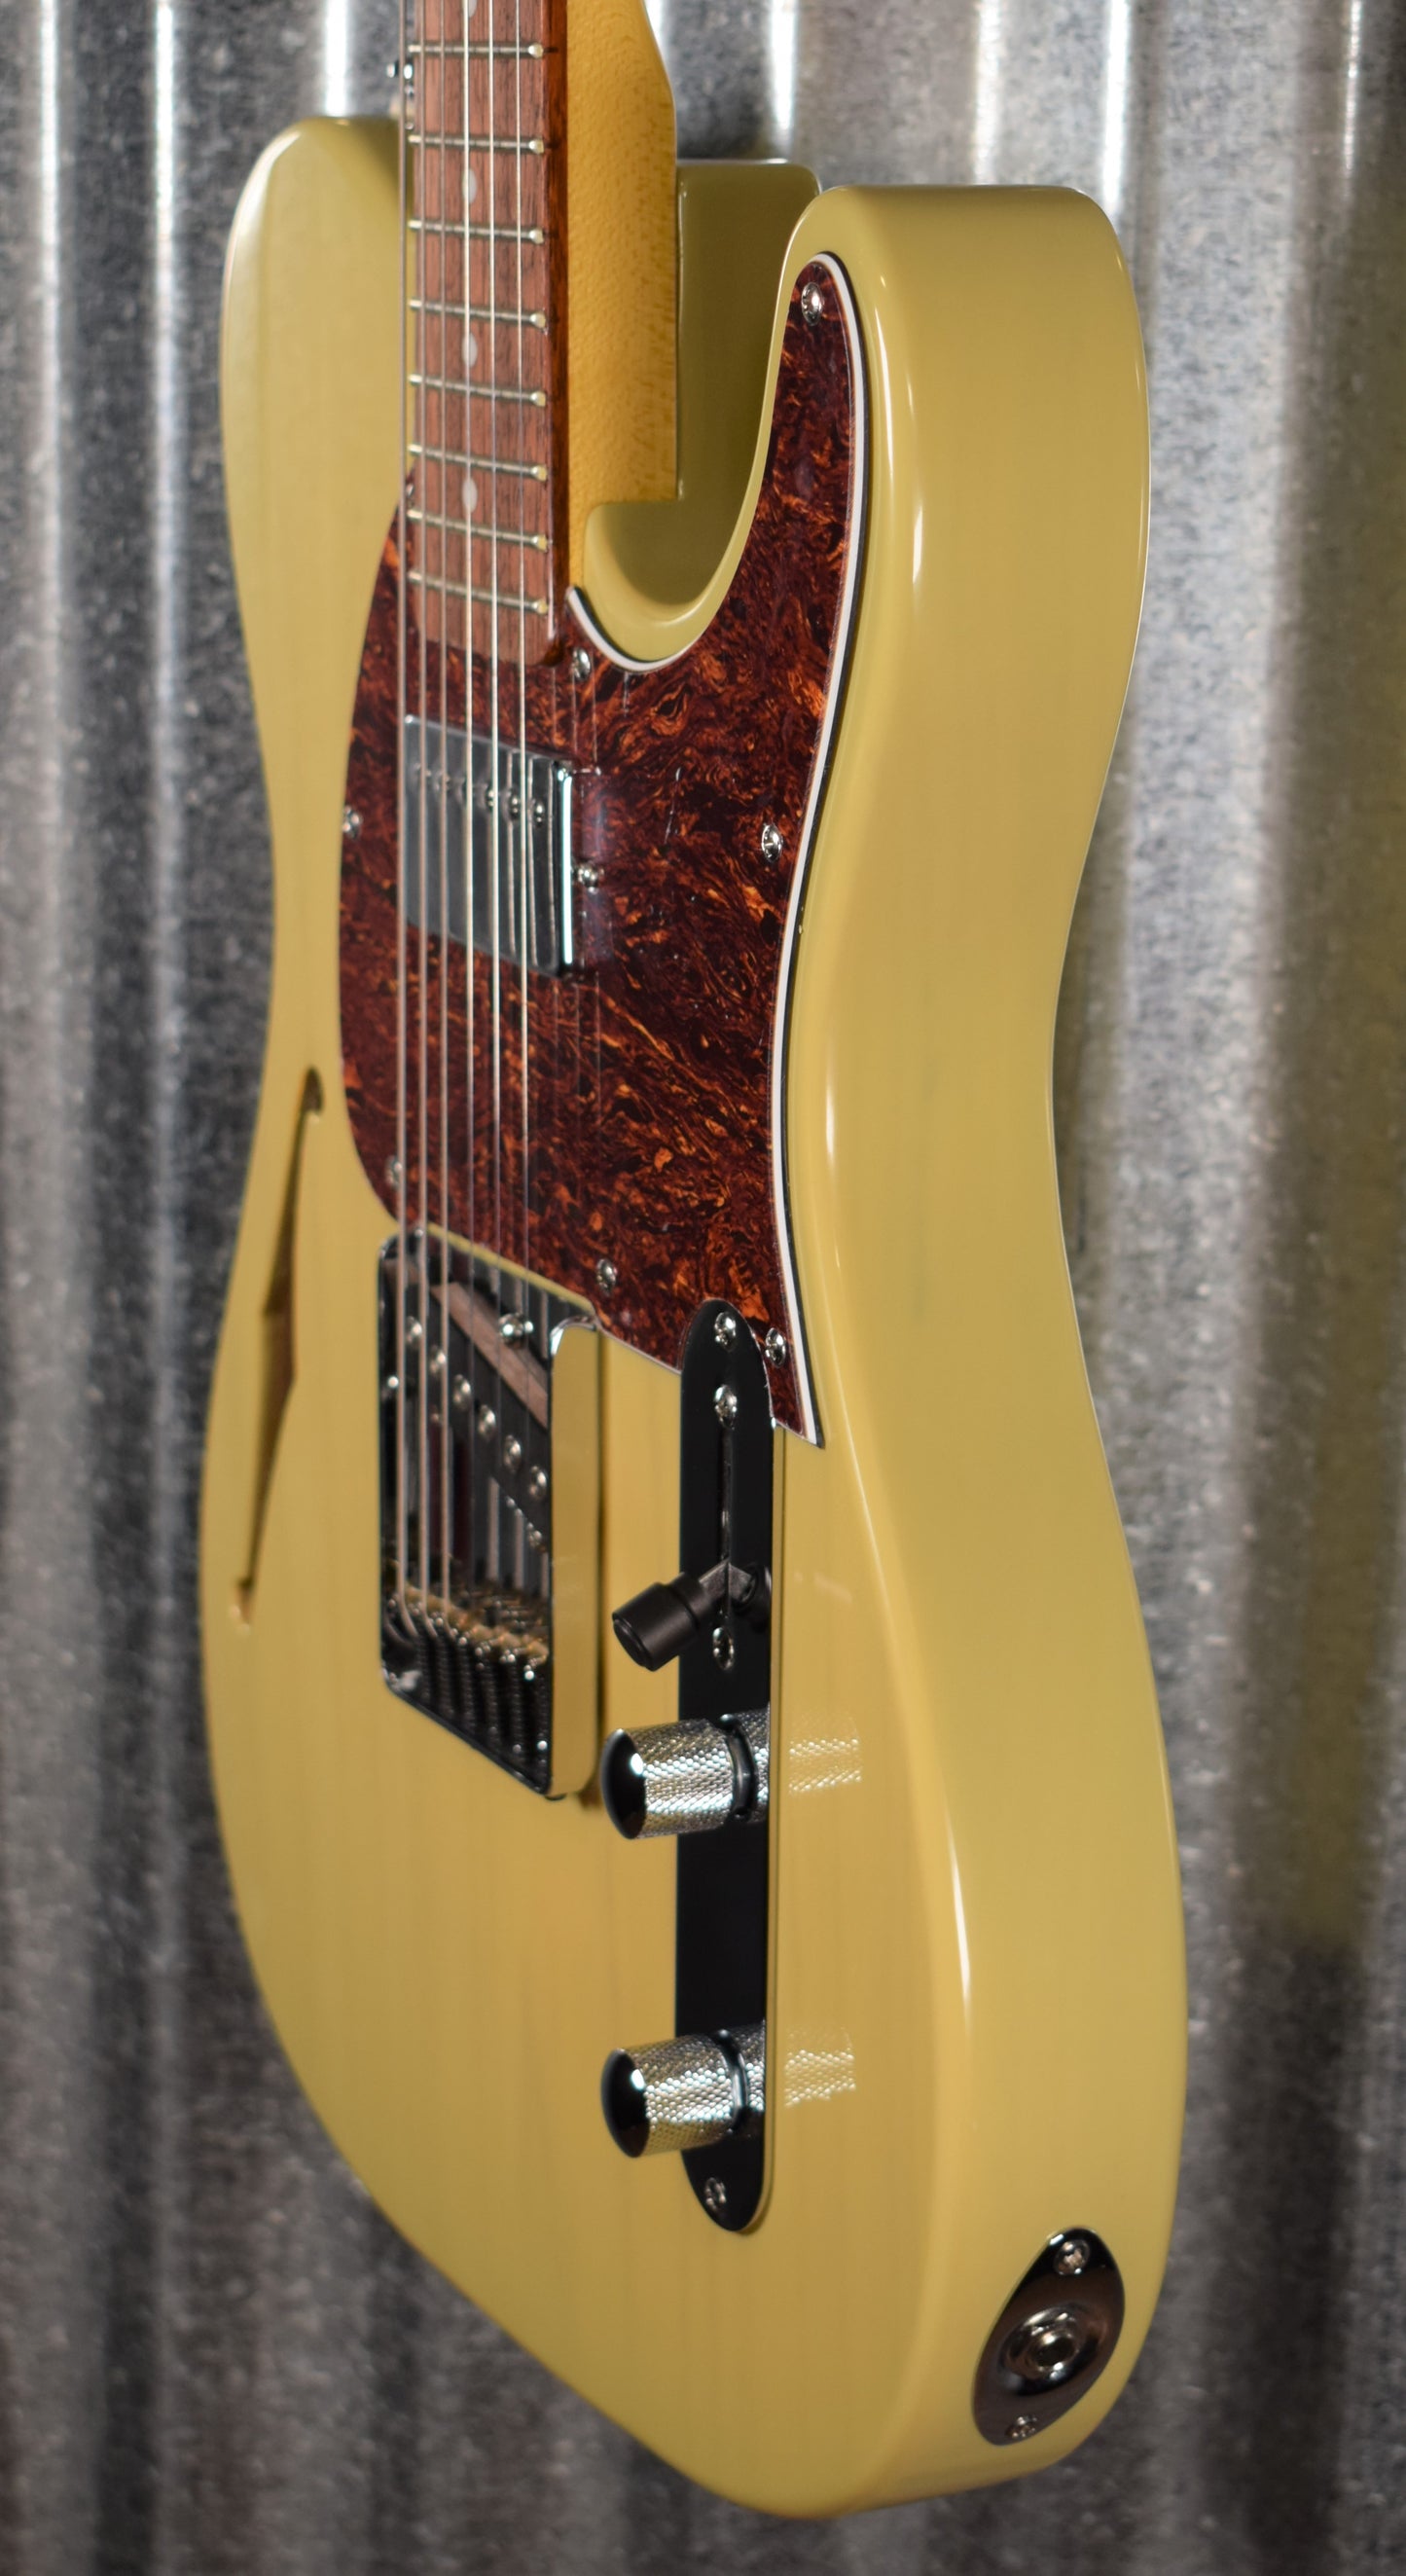 G&L Tribute ASAT Classic Bluesboy Semi Hollow Blonde Guitar #2062 Demo